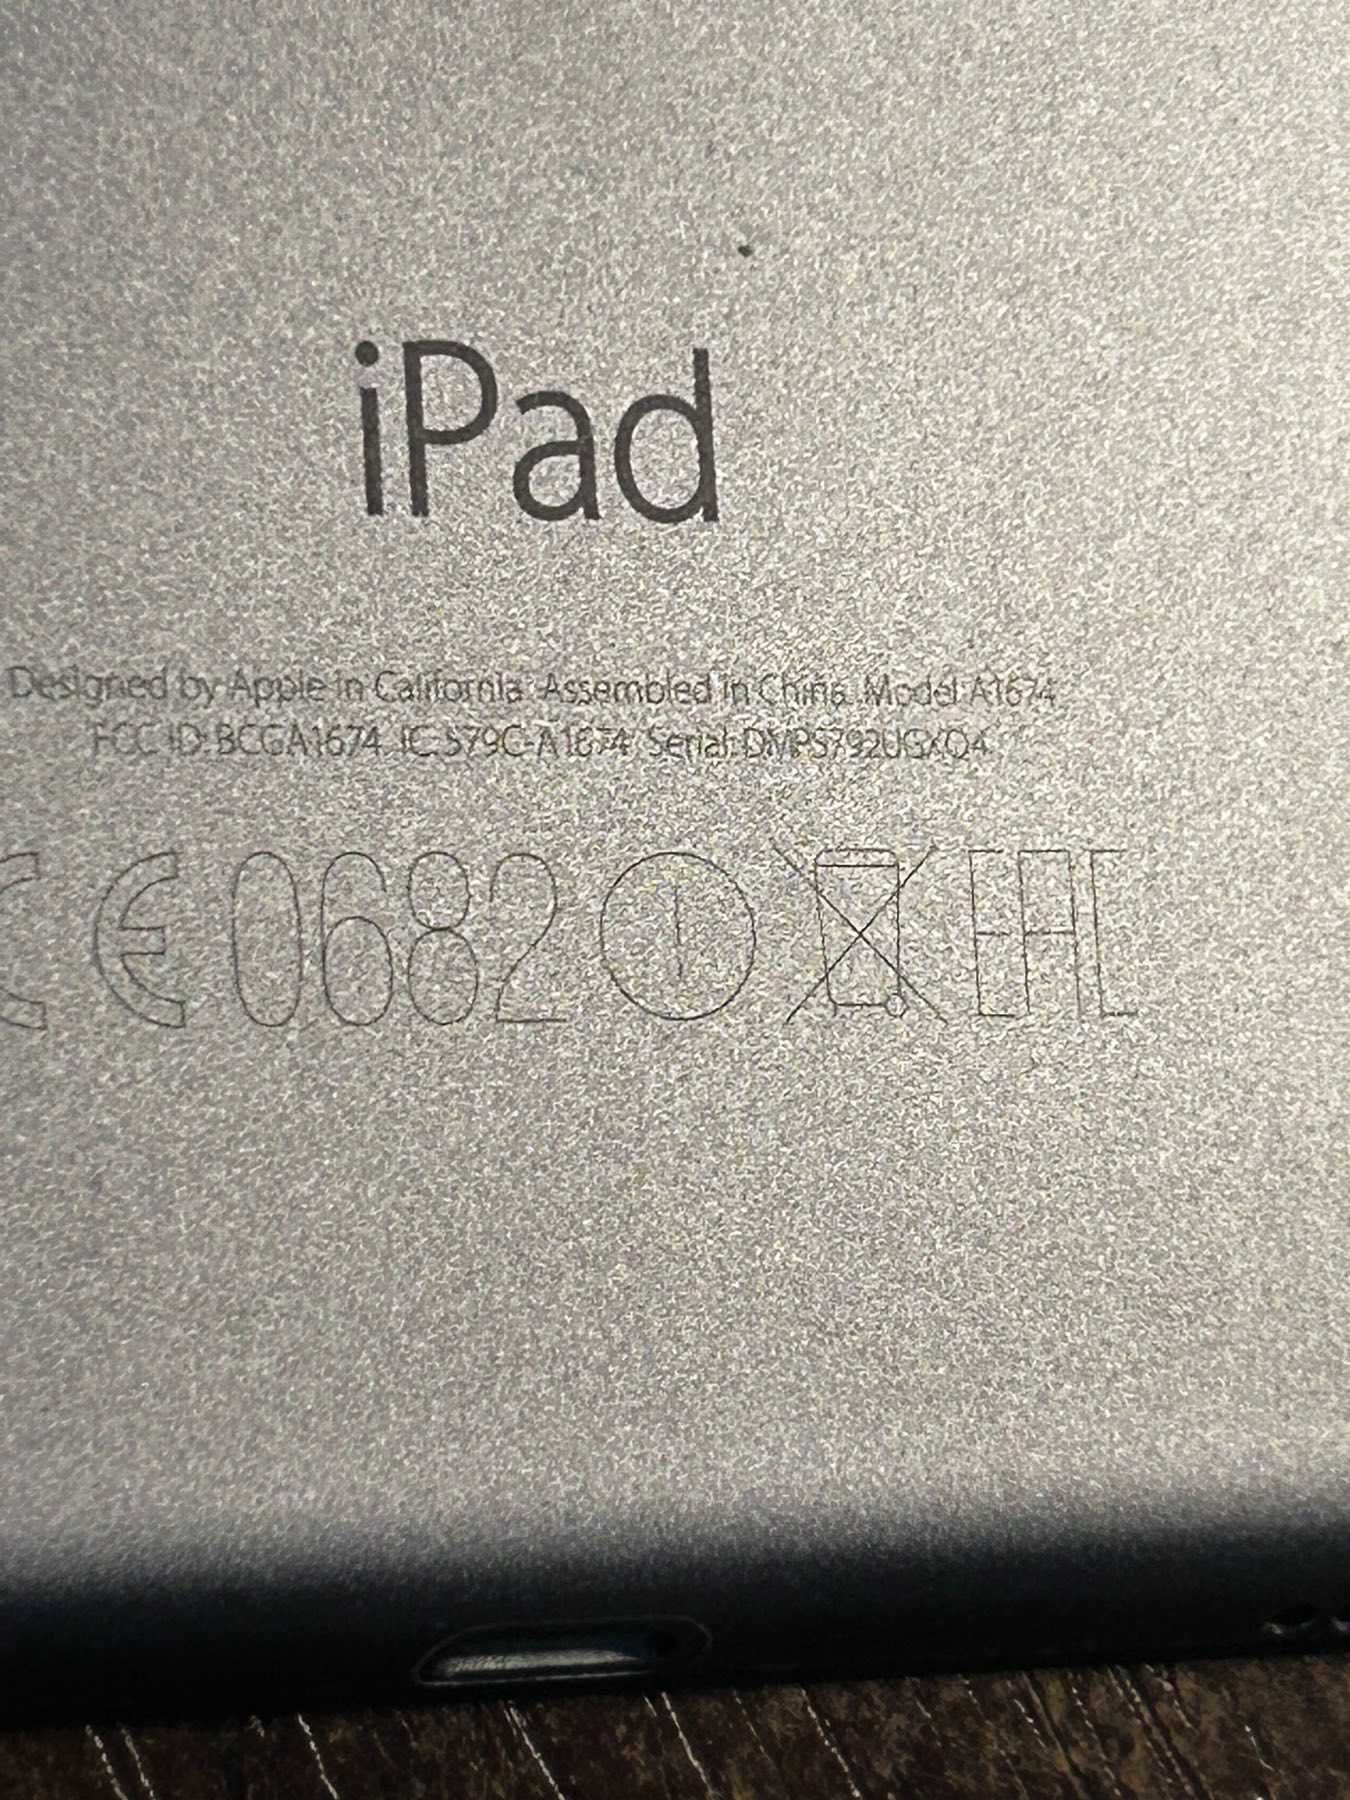 Apple iPad Pro 9,7 память 128Gb А1674 с 3G 4G LTE